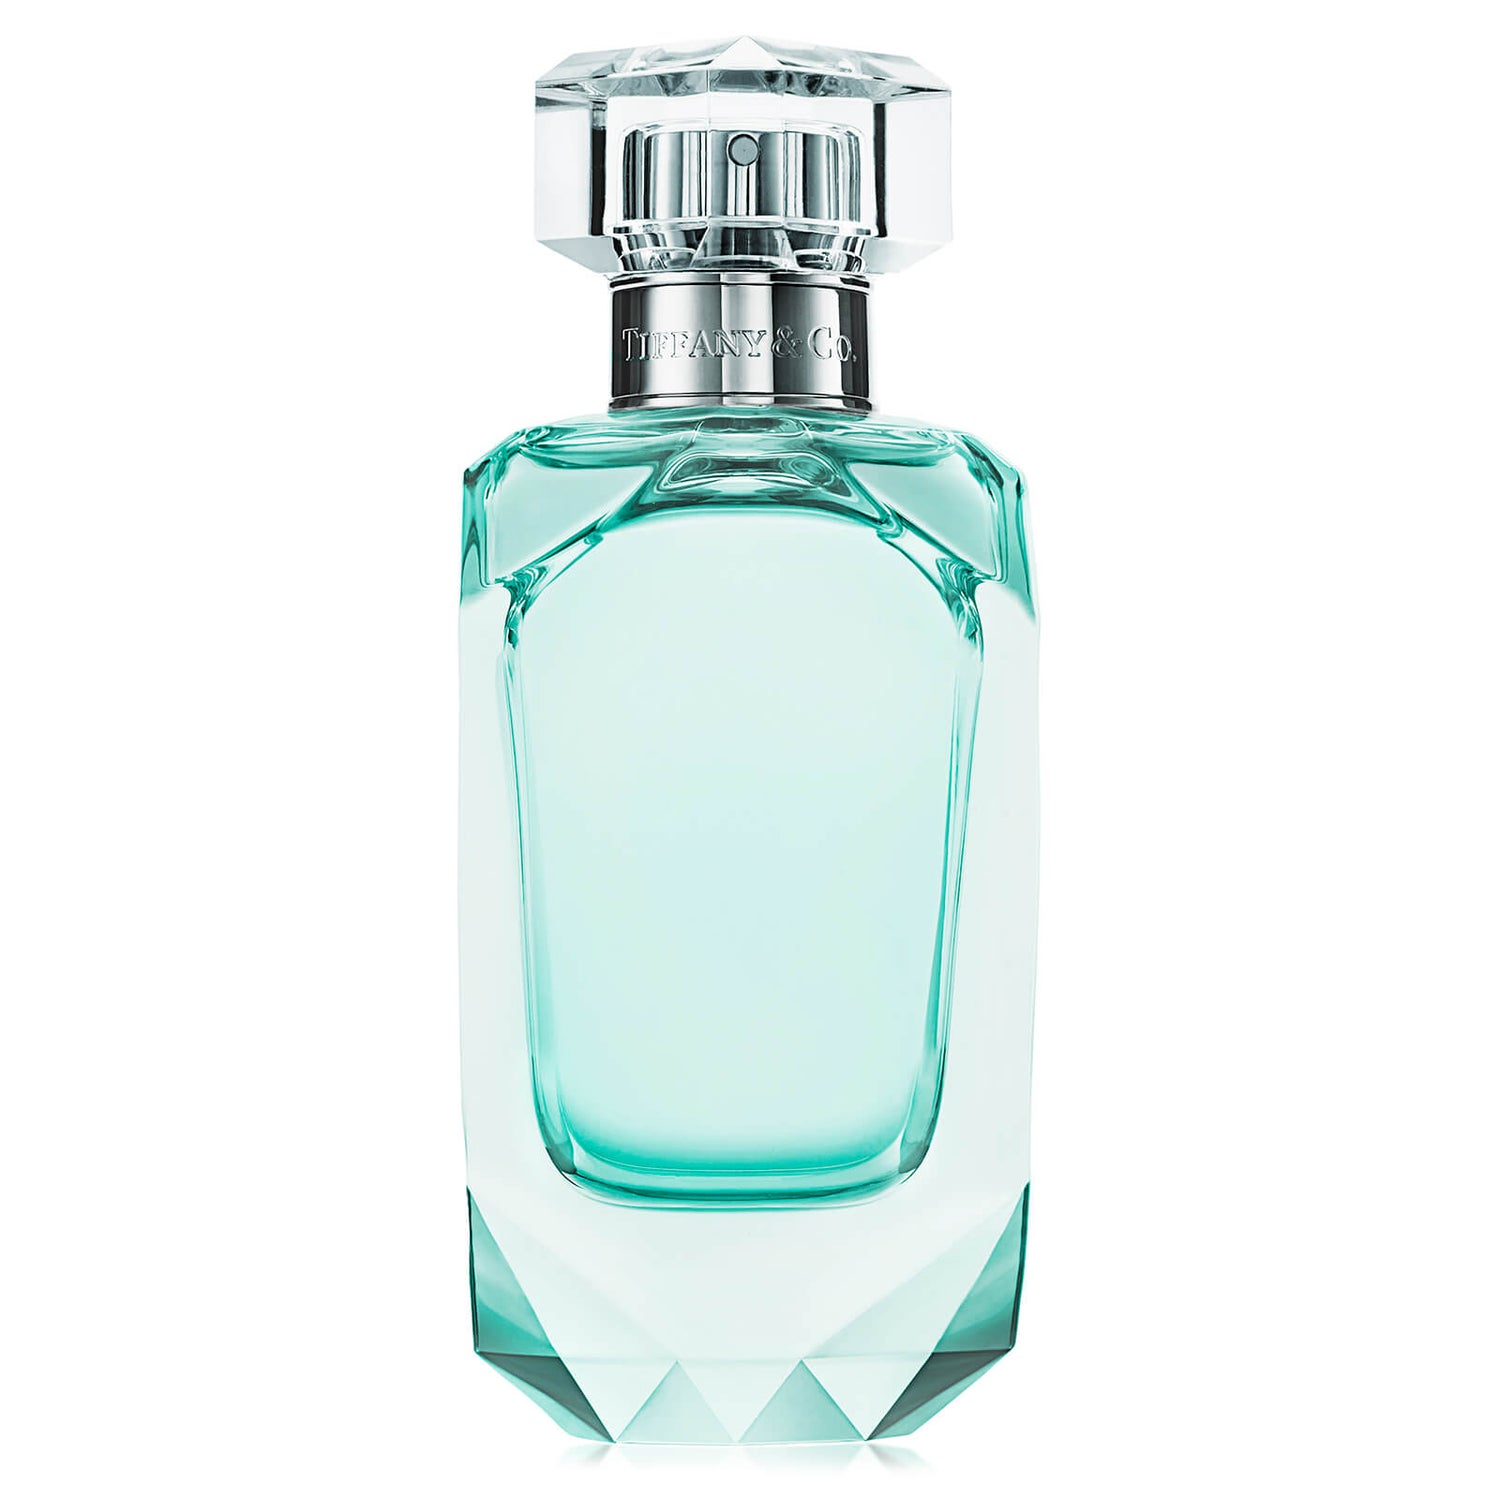 Tiffany & Co. Intense Eau de Parfum for Her 75ml